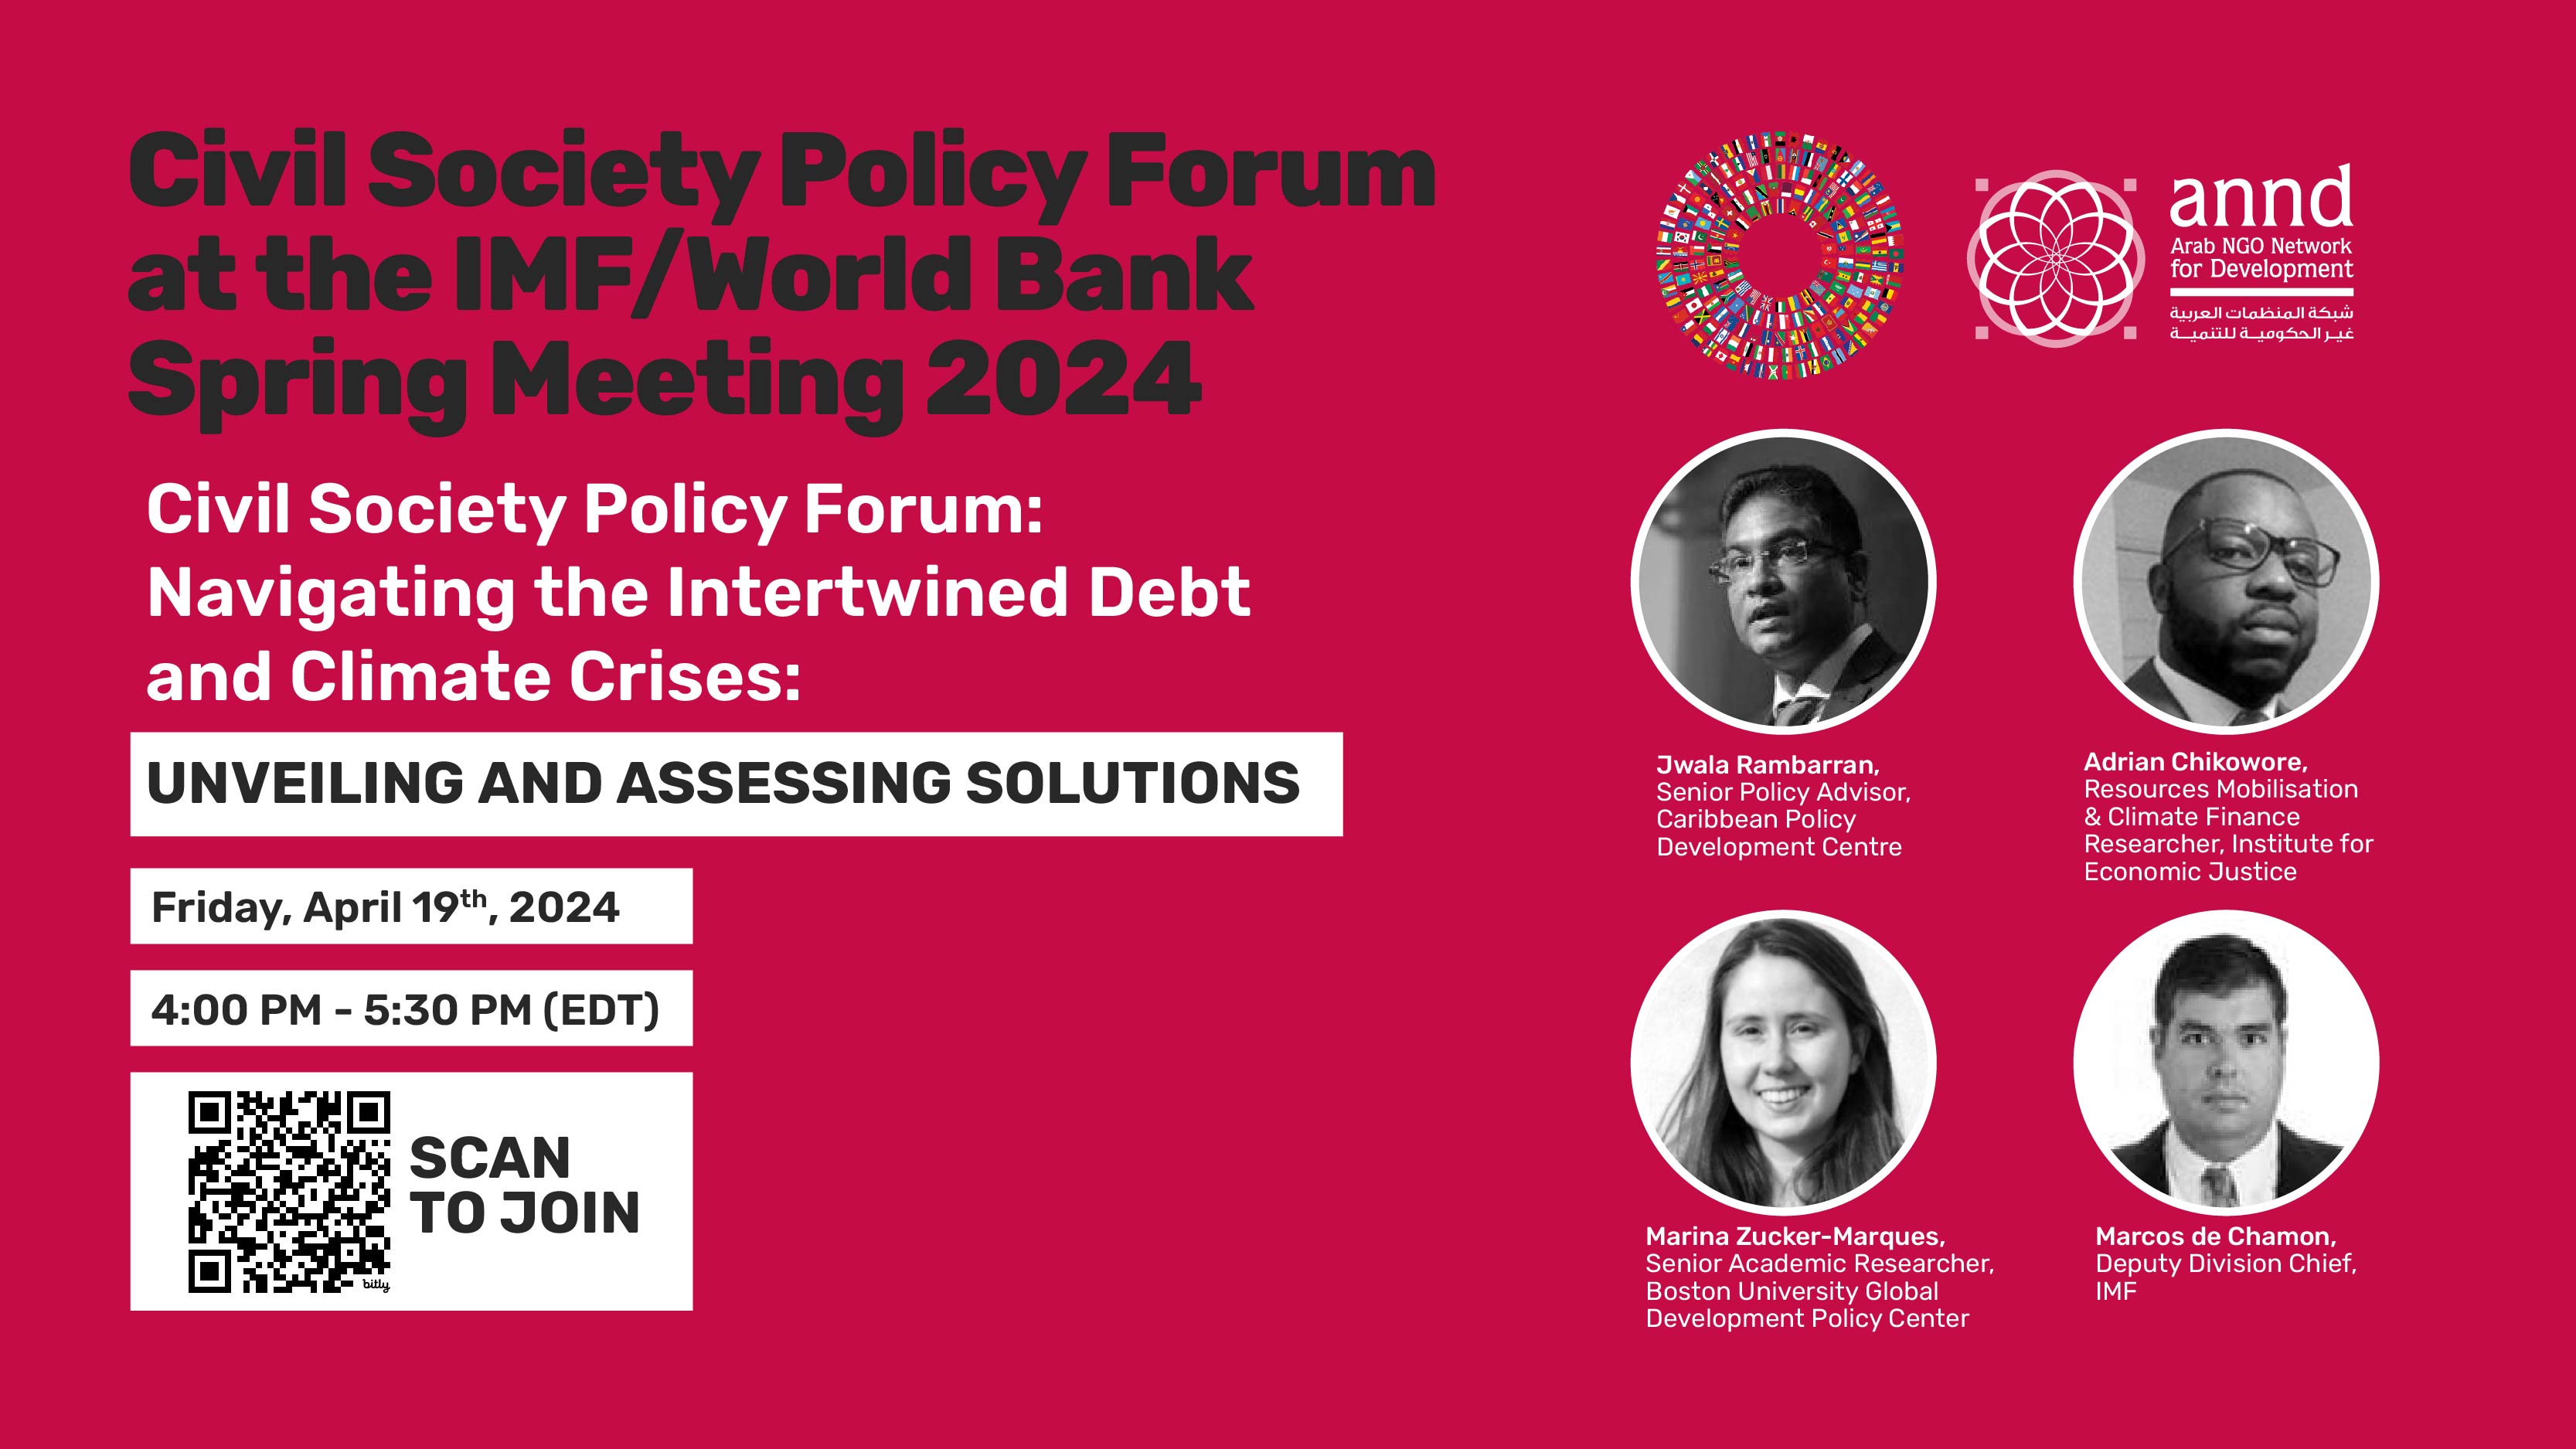 CSPF at IMF/World Bank Spring Meetings 2024